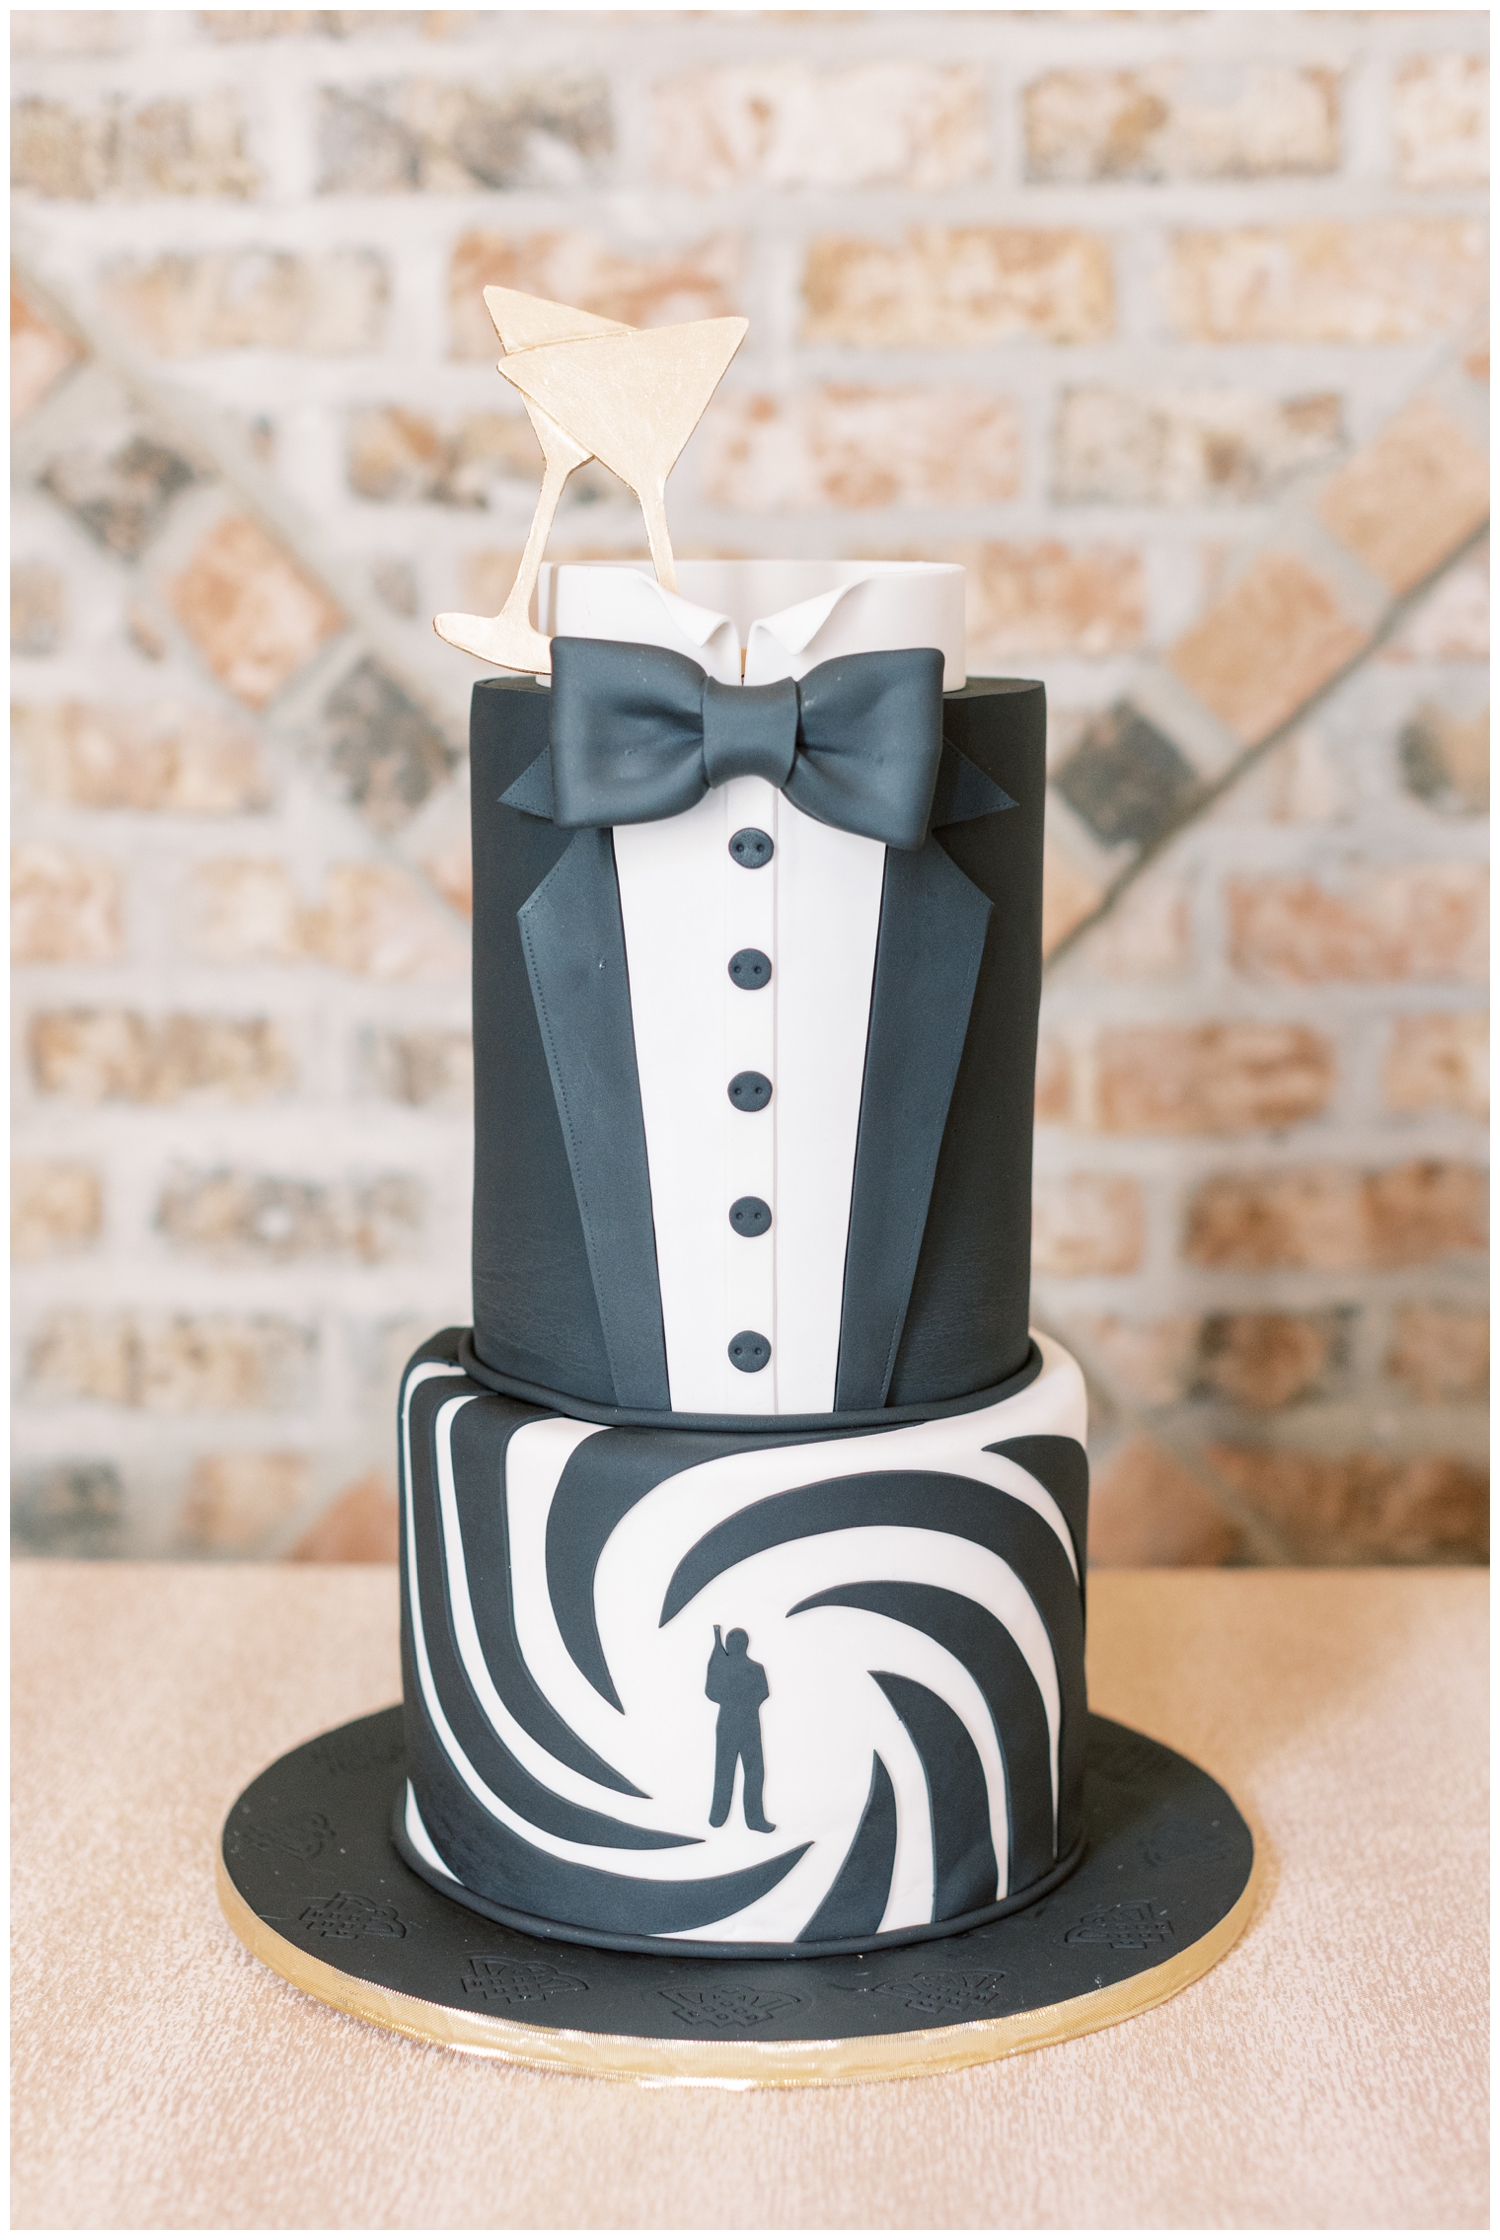 black and white tuxedo cake inside elegant Iron Manor Wedding